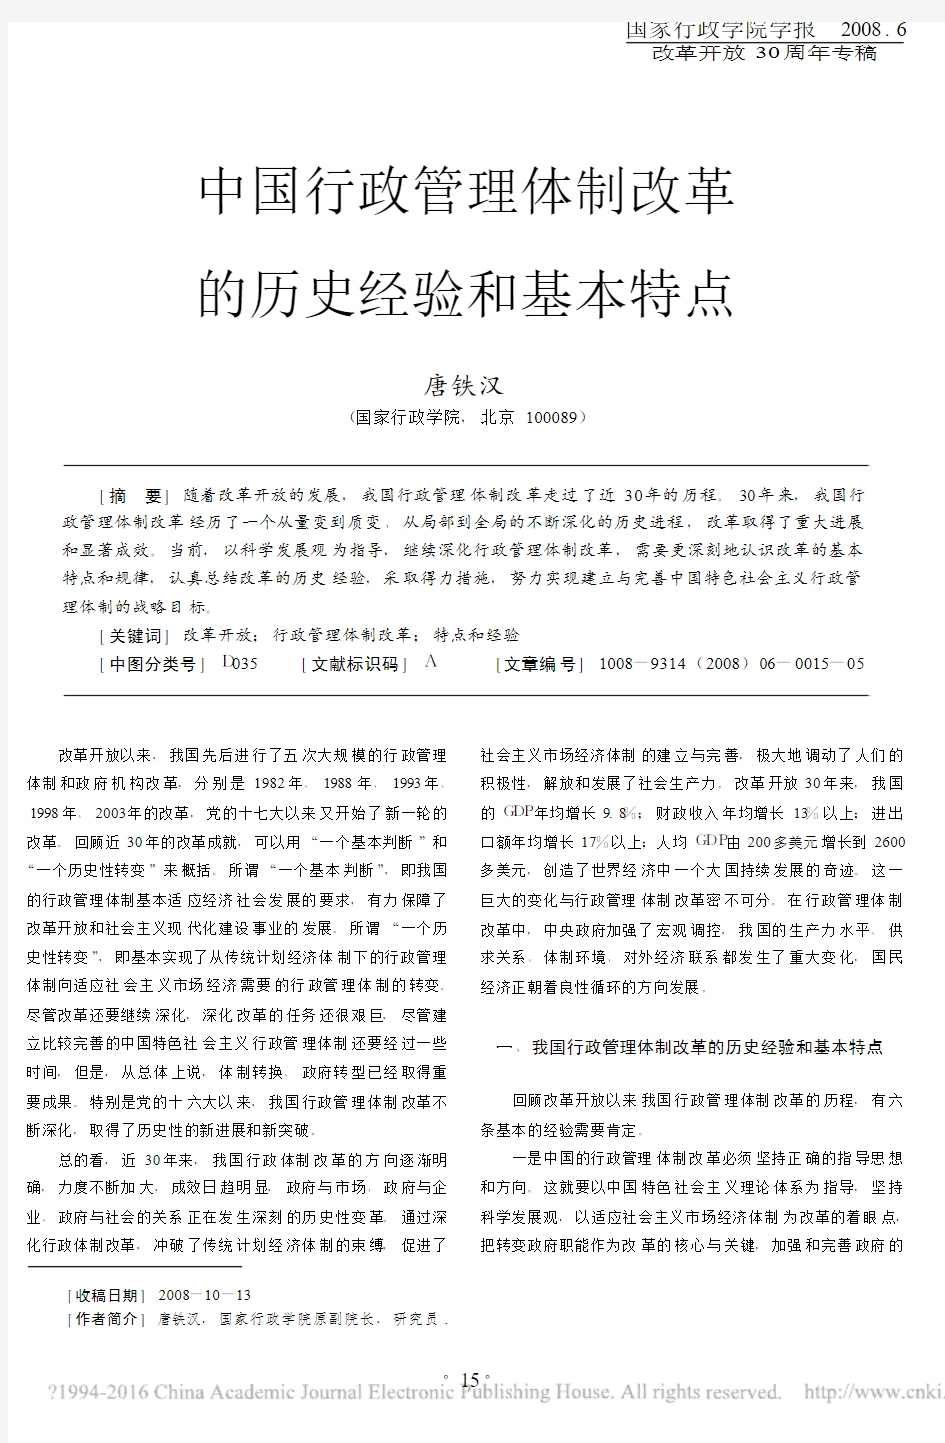 中国行政管理体制改革的历史经验和基本特点_唐铁汉